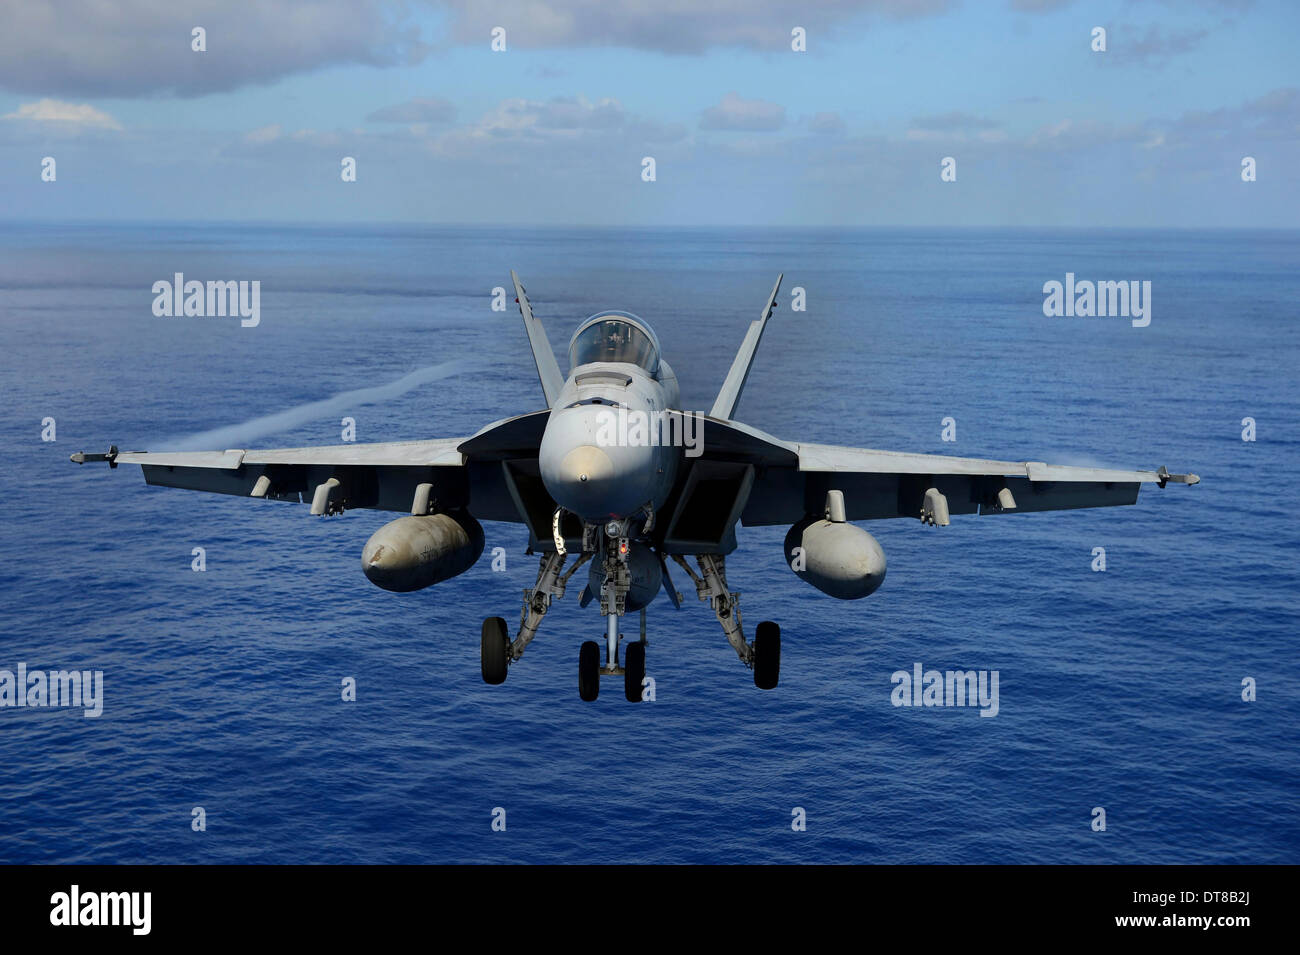 24 avril 2013 - Un F/A-18E Super Hornet participe à une démonstration de puissance de l'air au-dessus de l'océan Pacifique. Banque D'Images